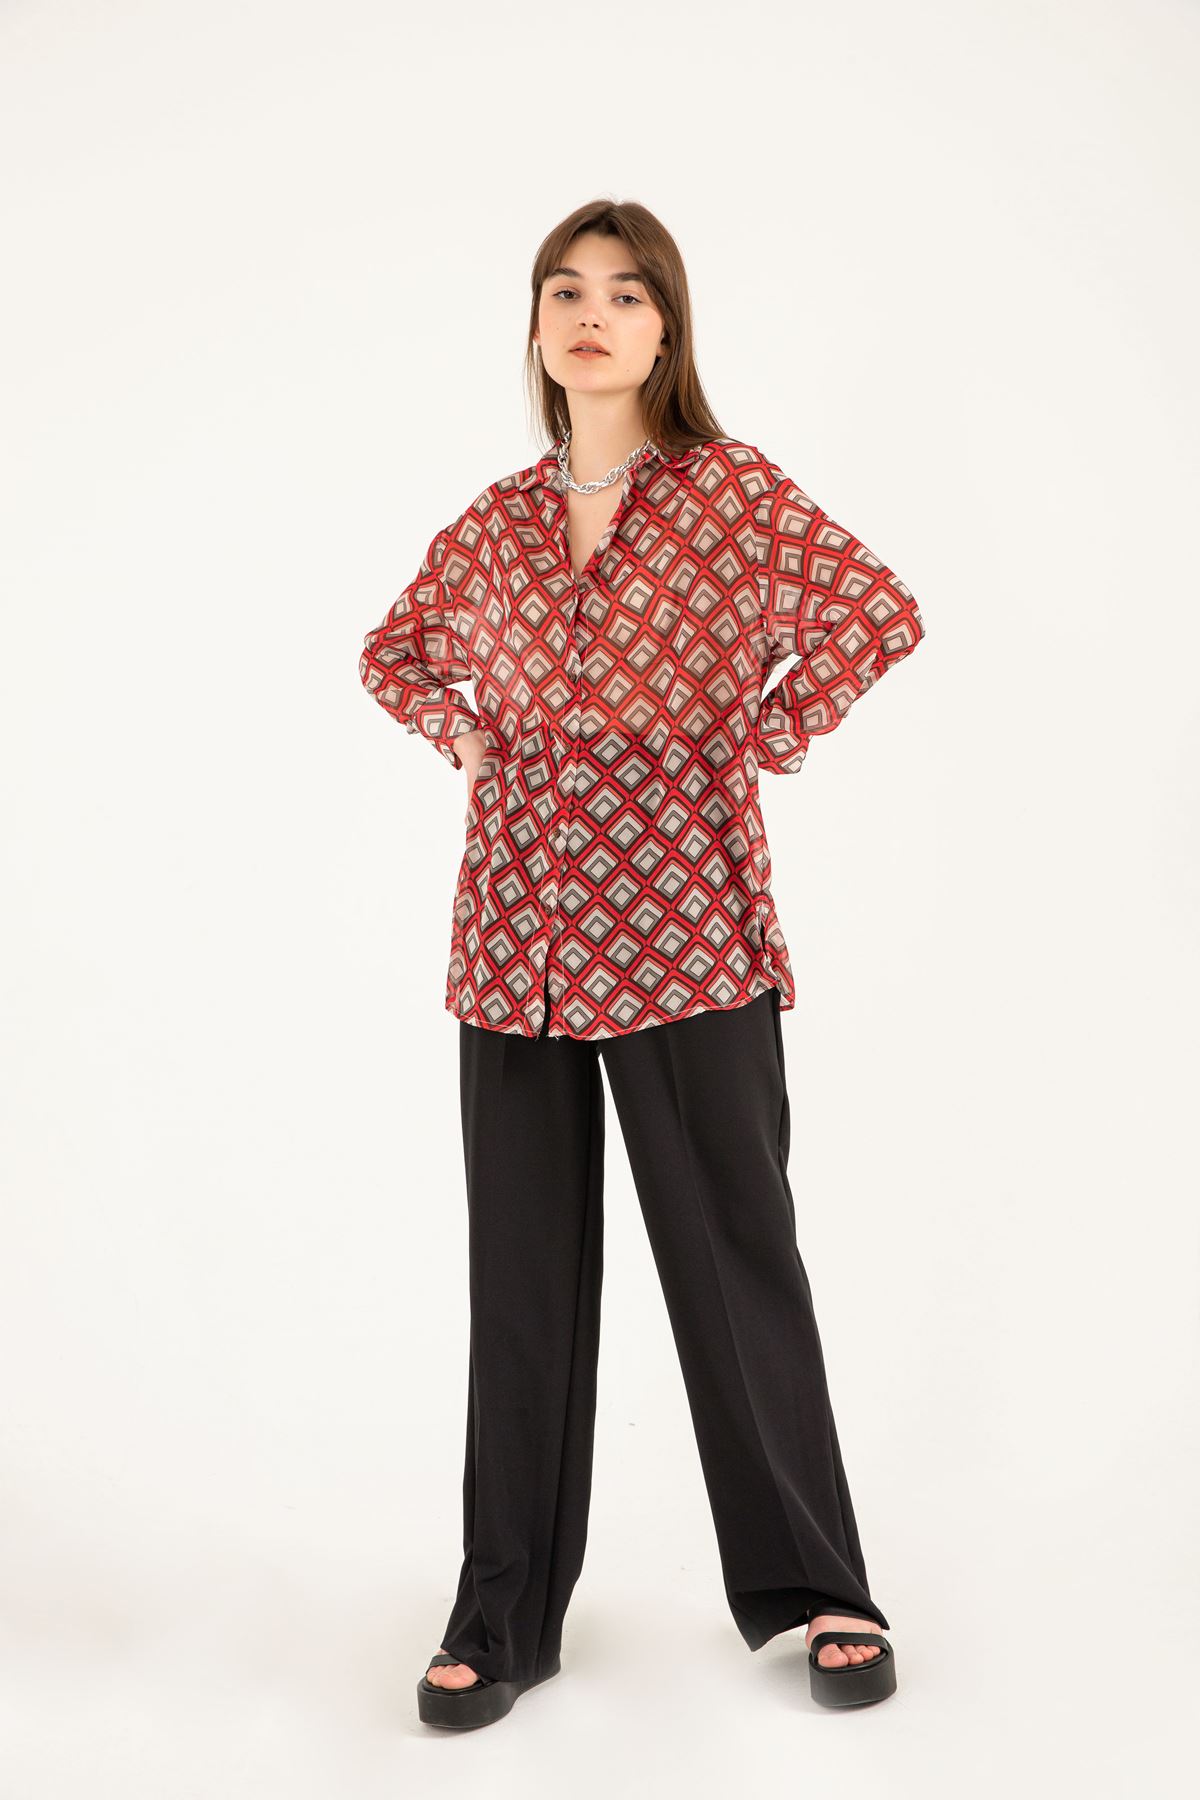 Chiffon Fabric Full Fit Geometric Pattern Women Shirt-Red